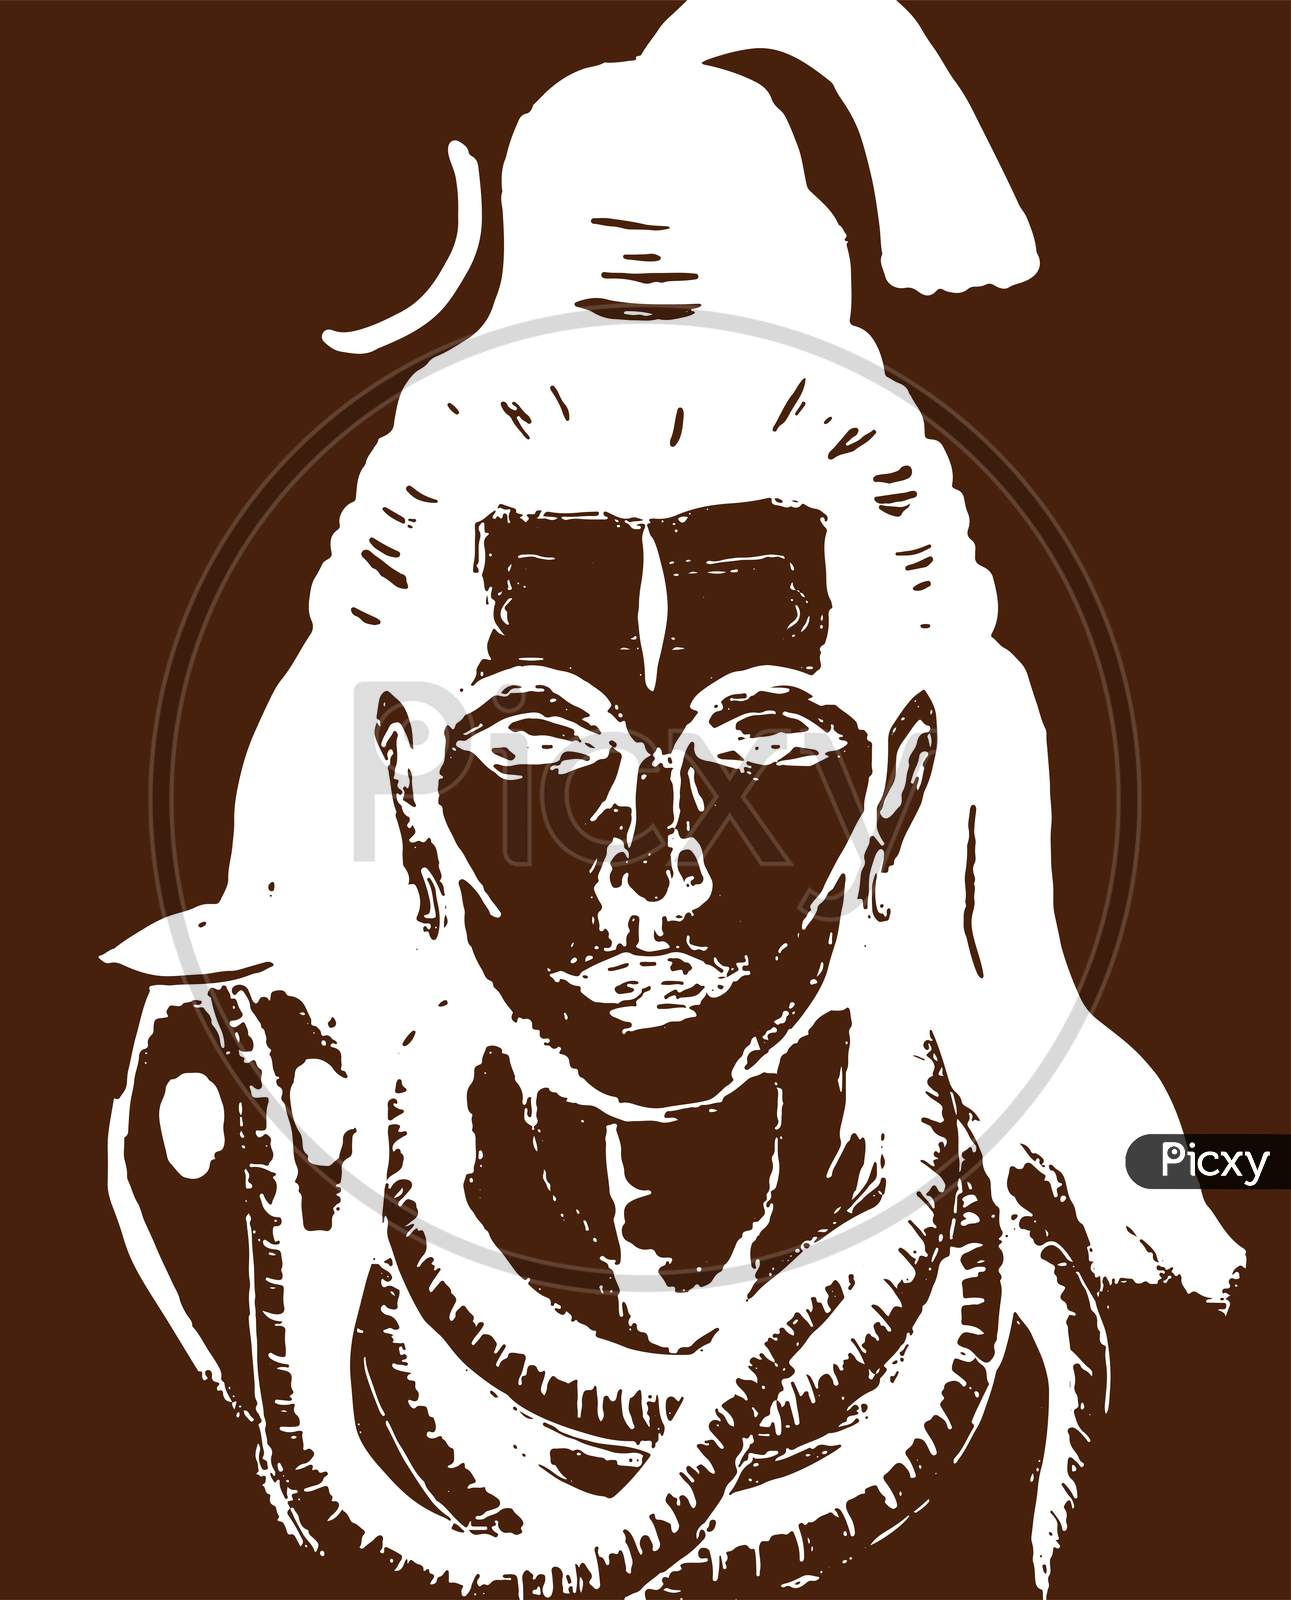 ArtStation - Sketch of Lord Shiva